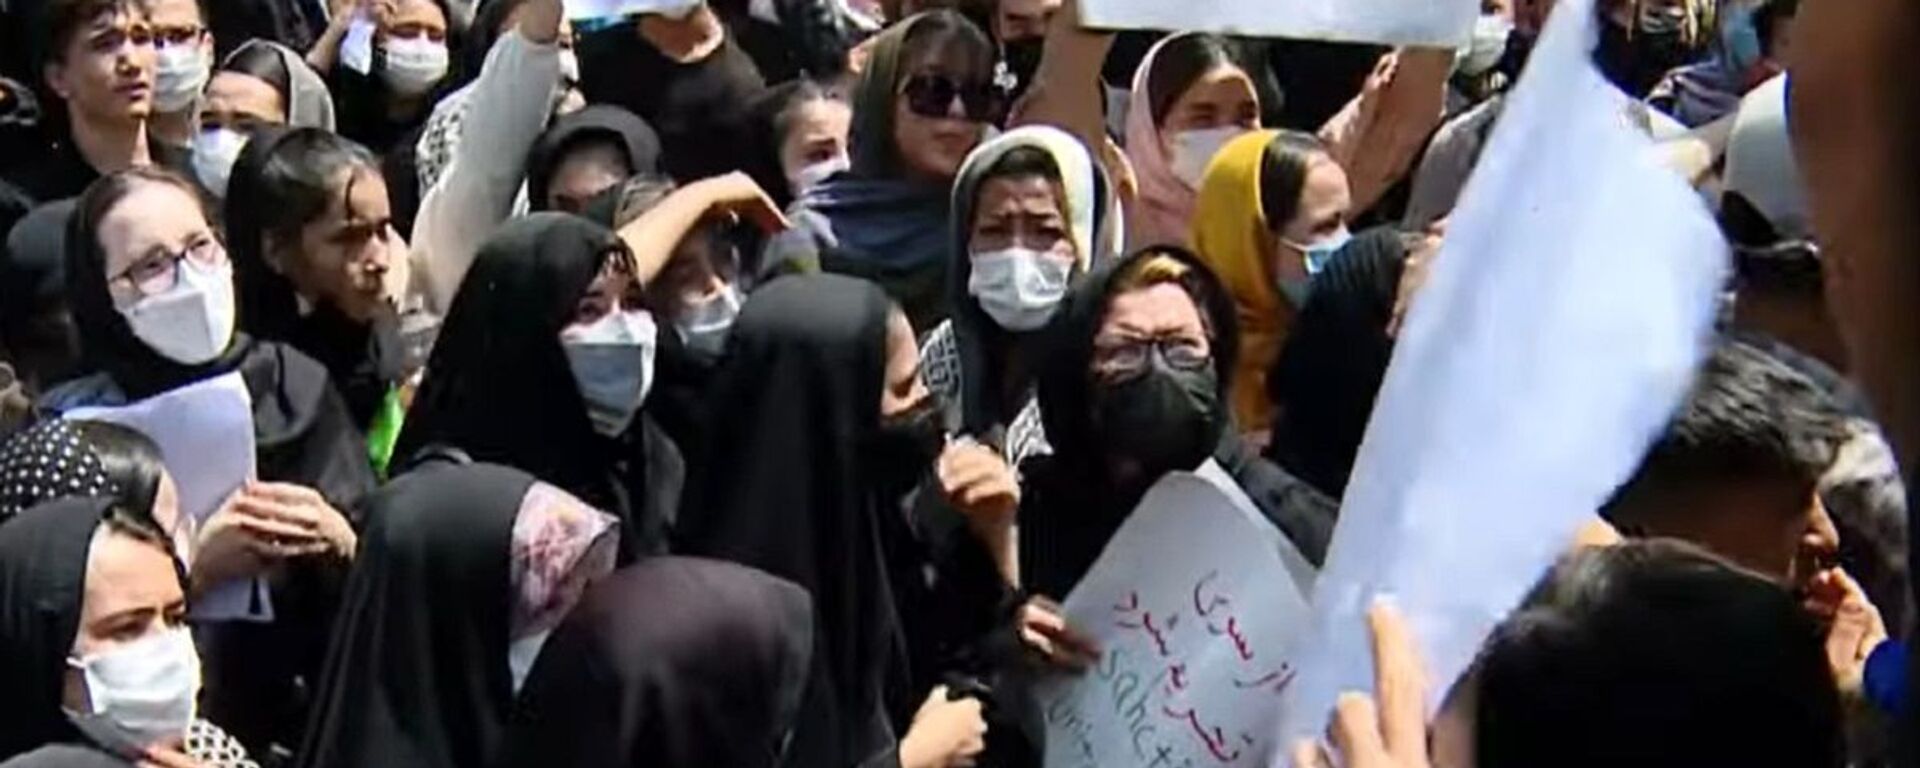 ავღანელმა ქალებმა „თალიბანის“ წინააღმდეგ ირანში საპროტესტო აქცია გამართეს - ვიდეო - Sputnik საქართველო, 1920, 17.08.2021